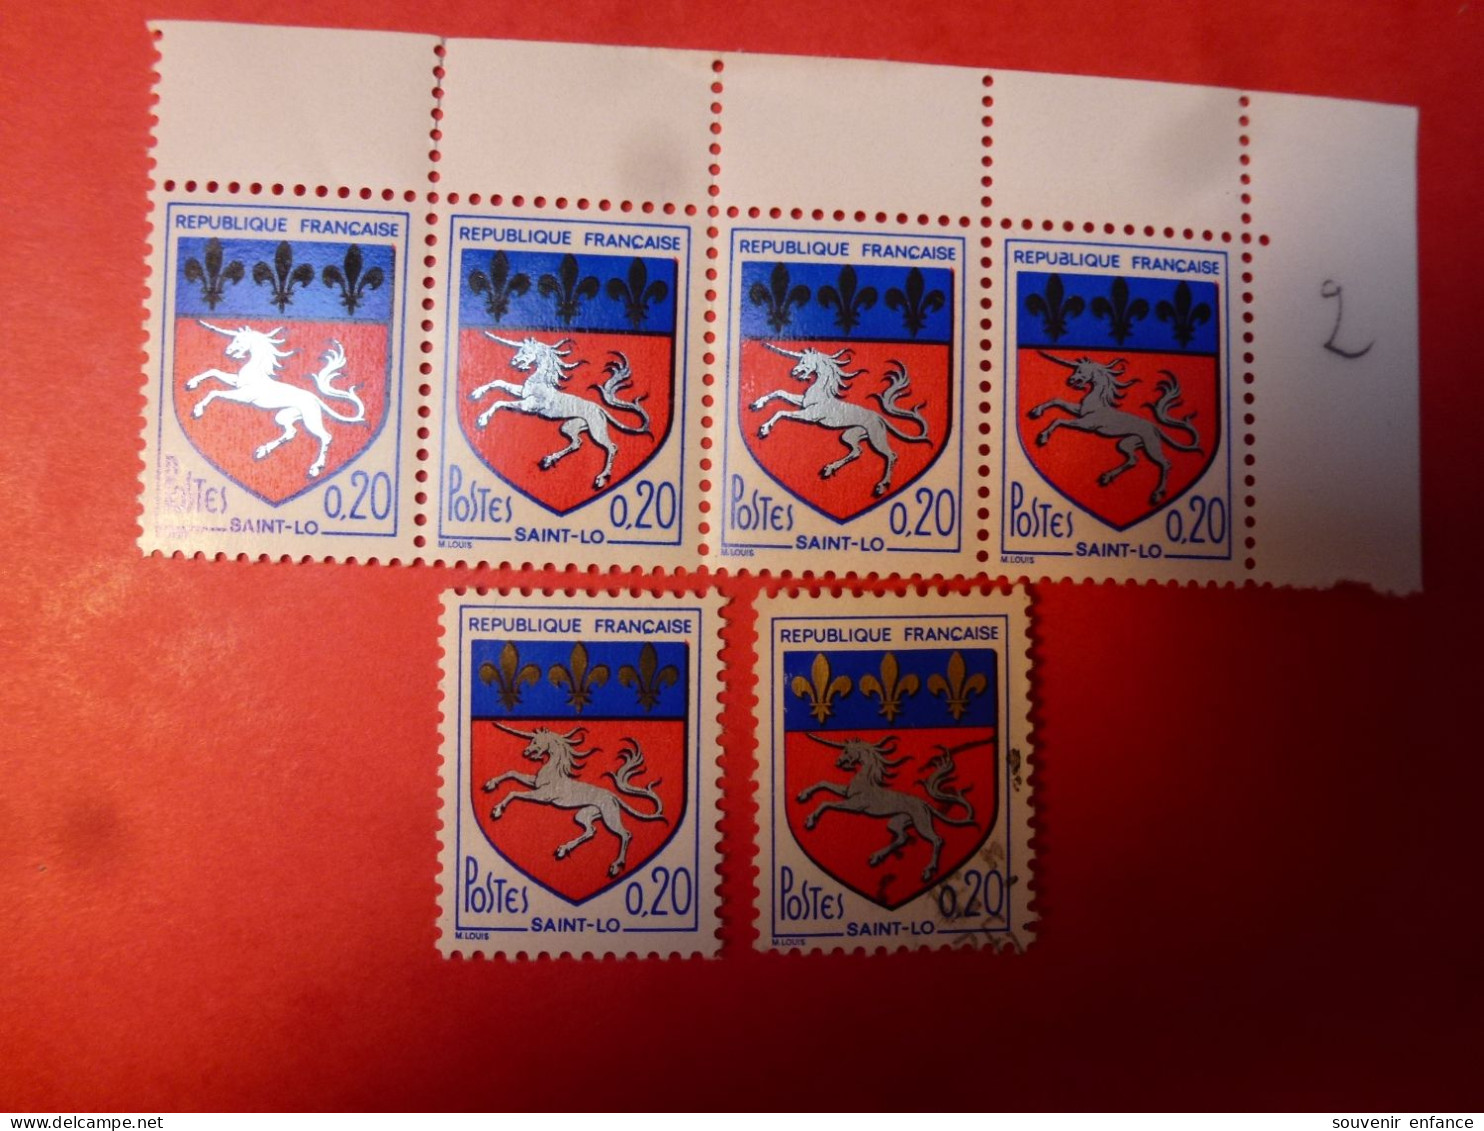 Bande De 4 N°1510 Saint Lô Plus 1 Exemplaire Variété Fleurs De Lys Noires Neuf ** Le Timbre De Référence à La Charnière - Unused Stamps